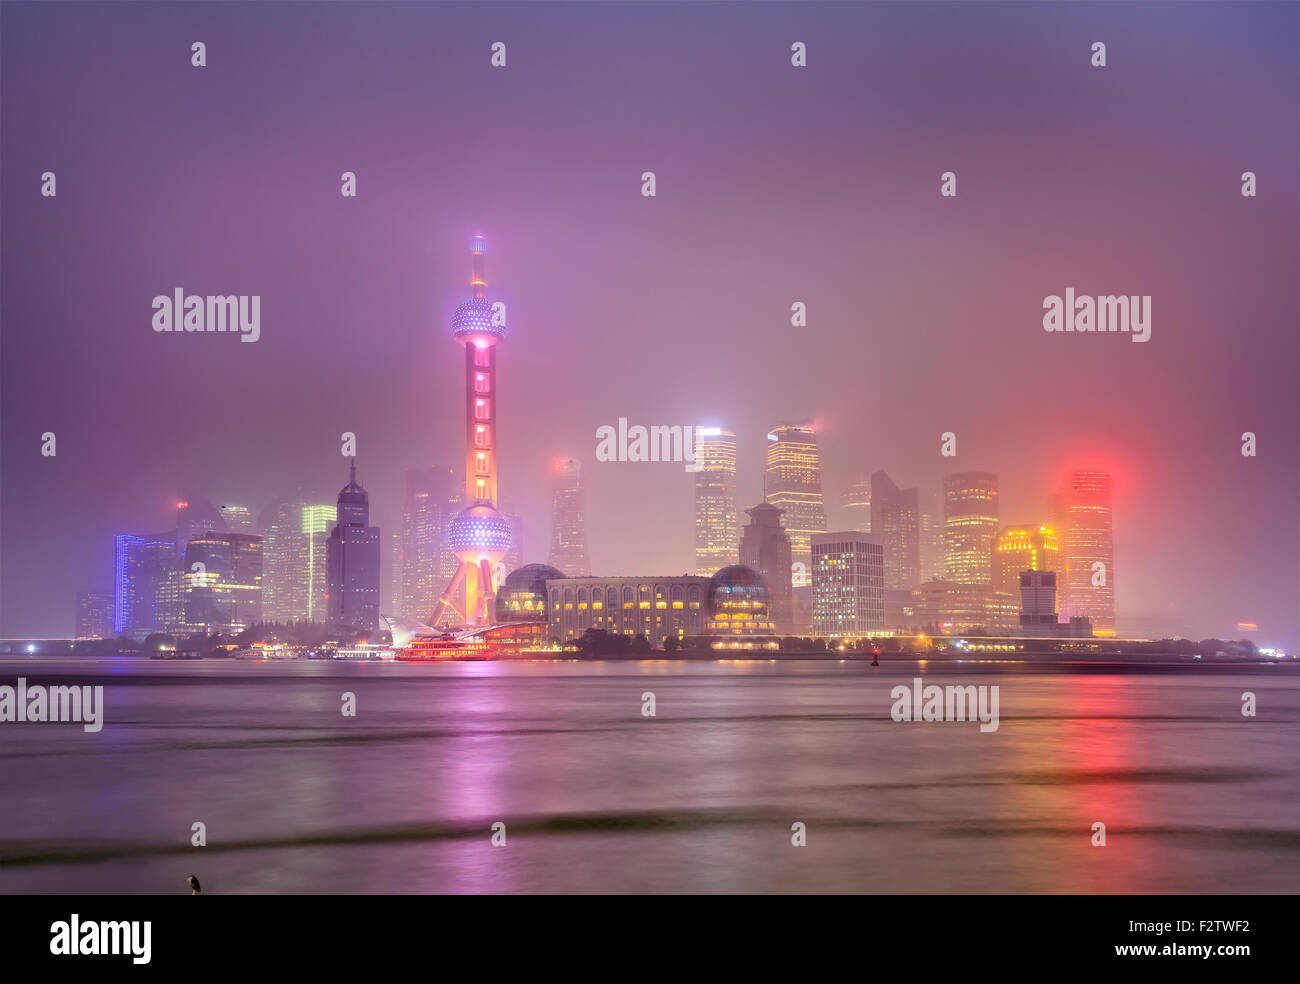 Cinese megapolis moderna Shanghai - vista al tramonto verso il Pudong illuminato da luci con la riflessione in rive dello Yangtze Foto Stock